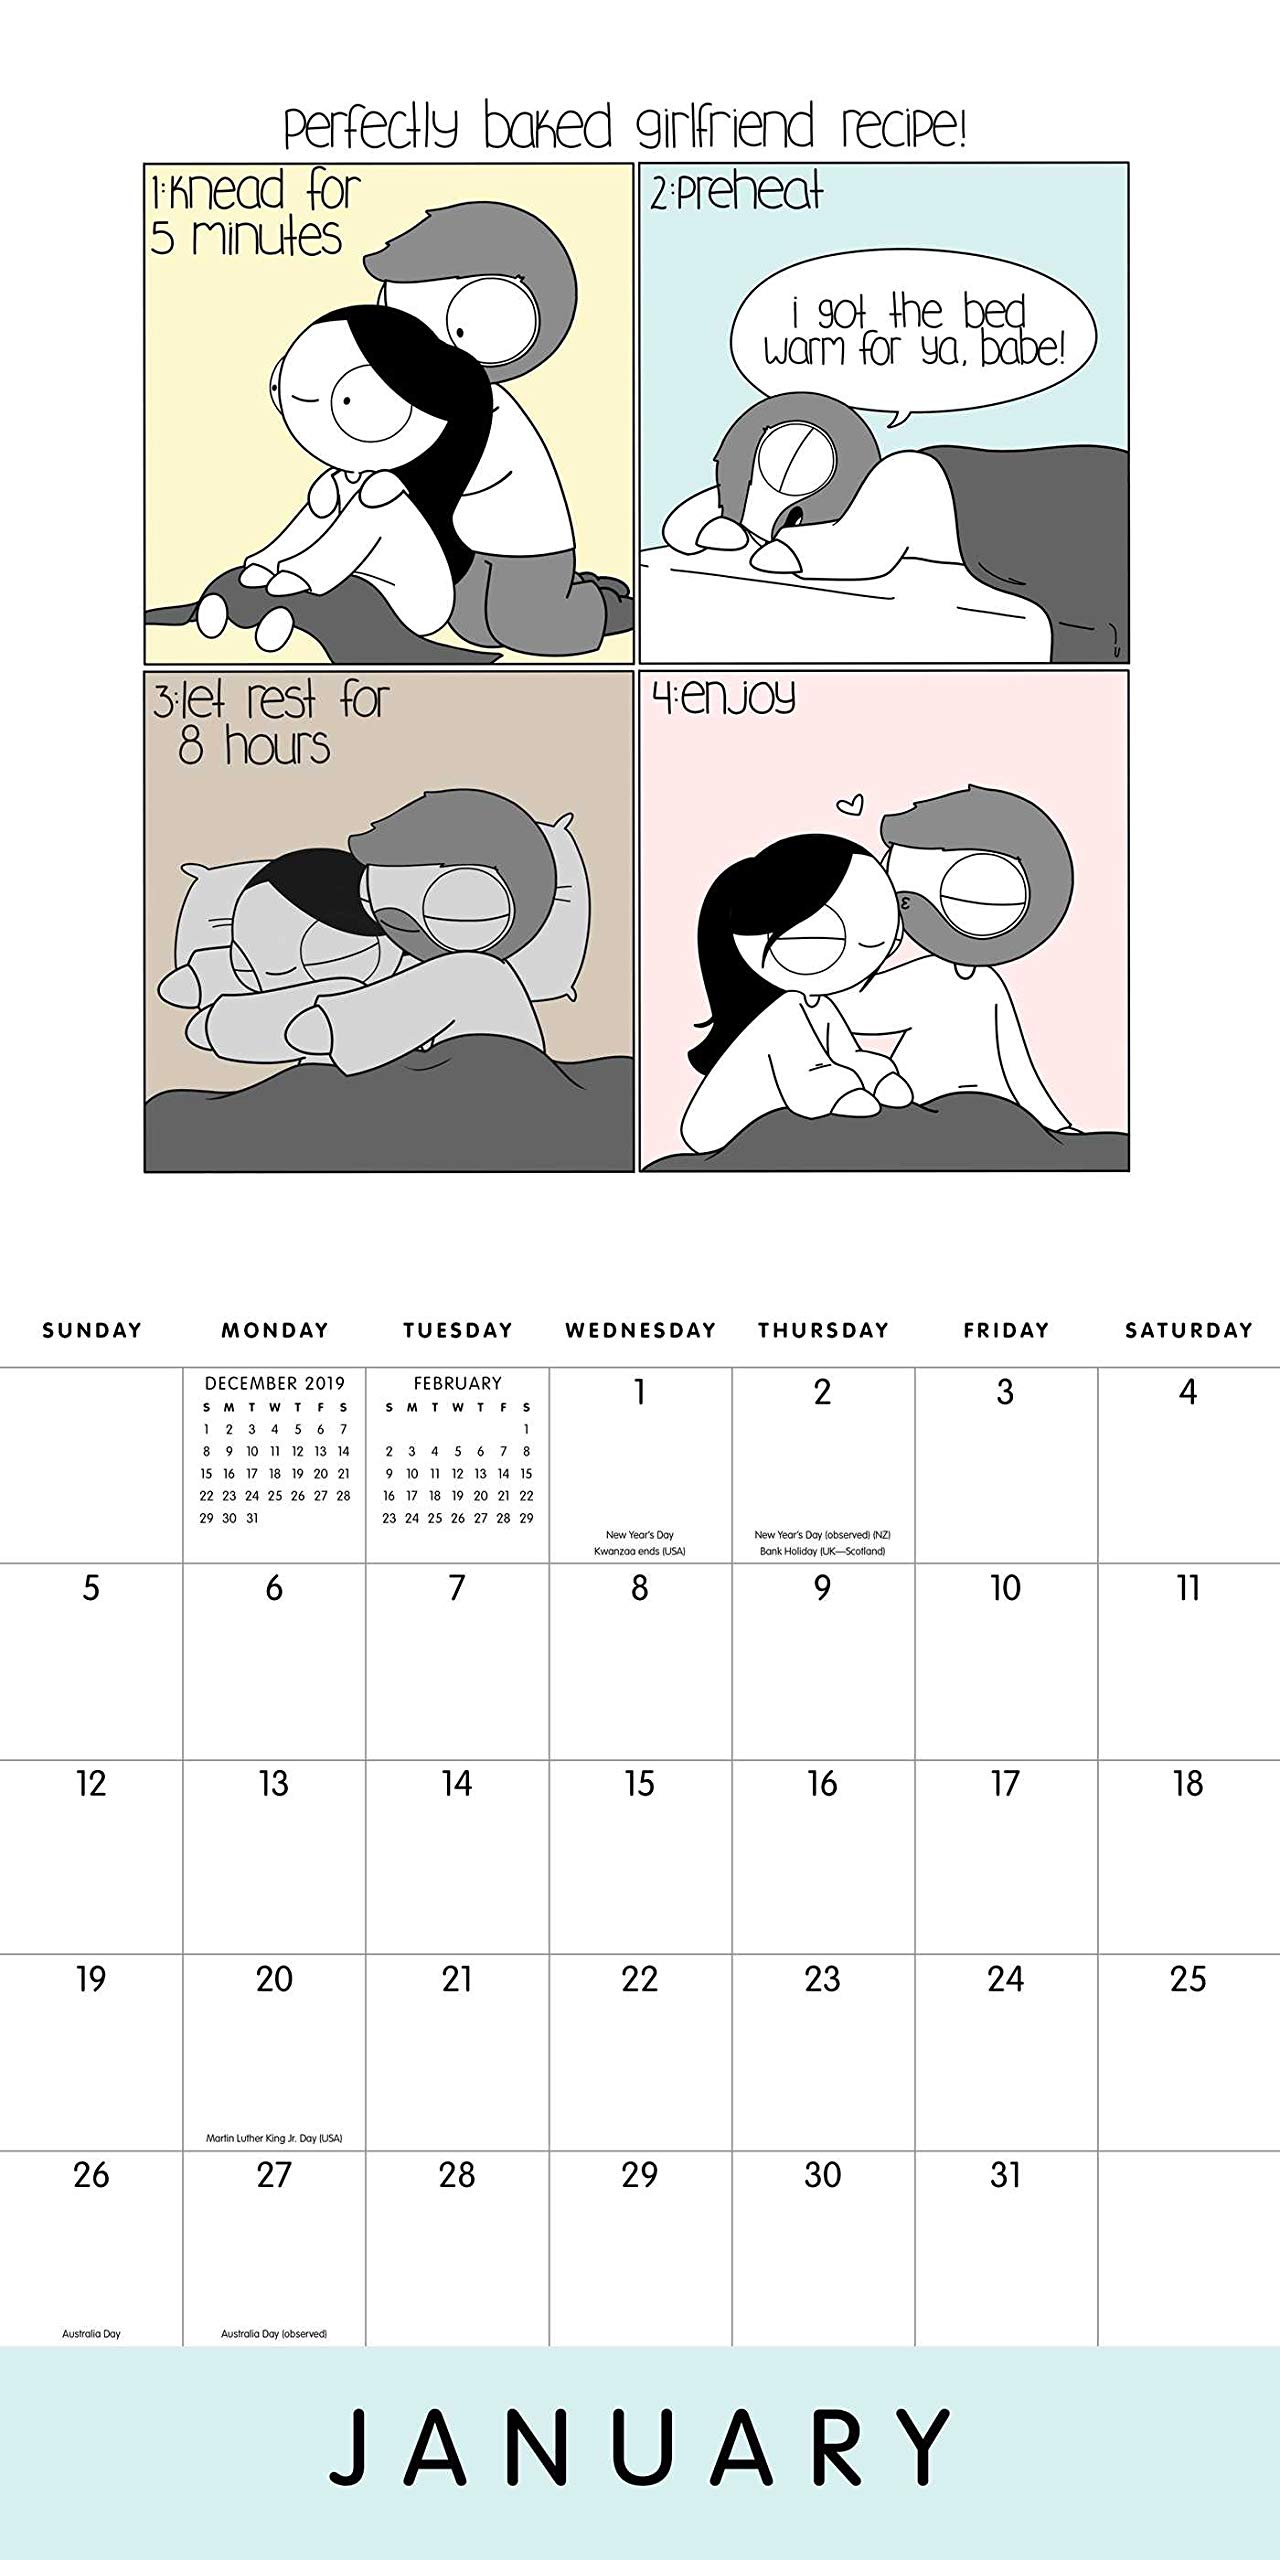 Catana Comics Little Moments of Love 2020 Wall Calendar